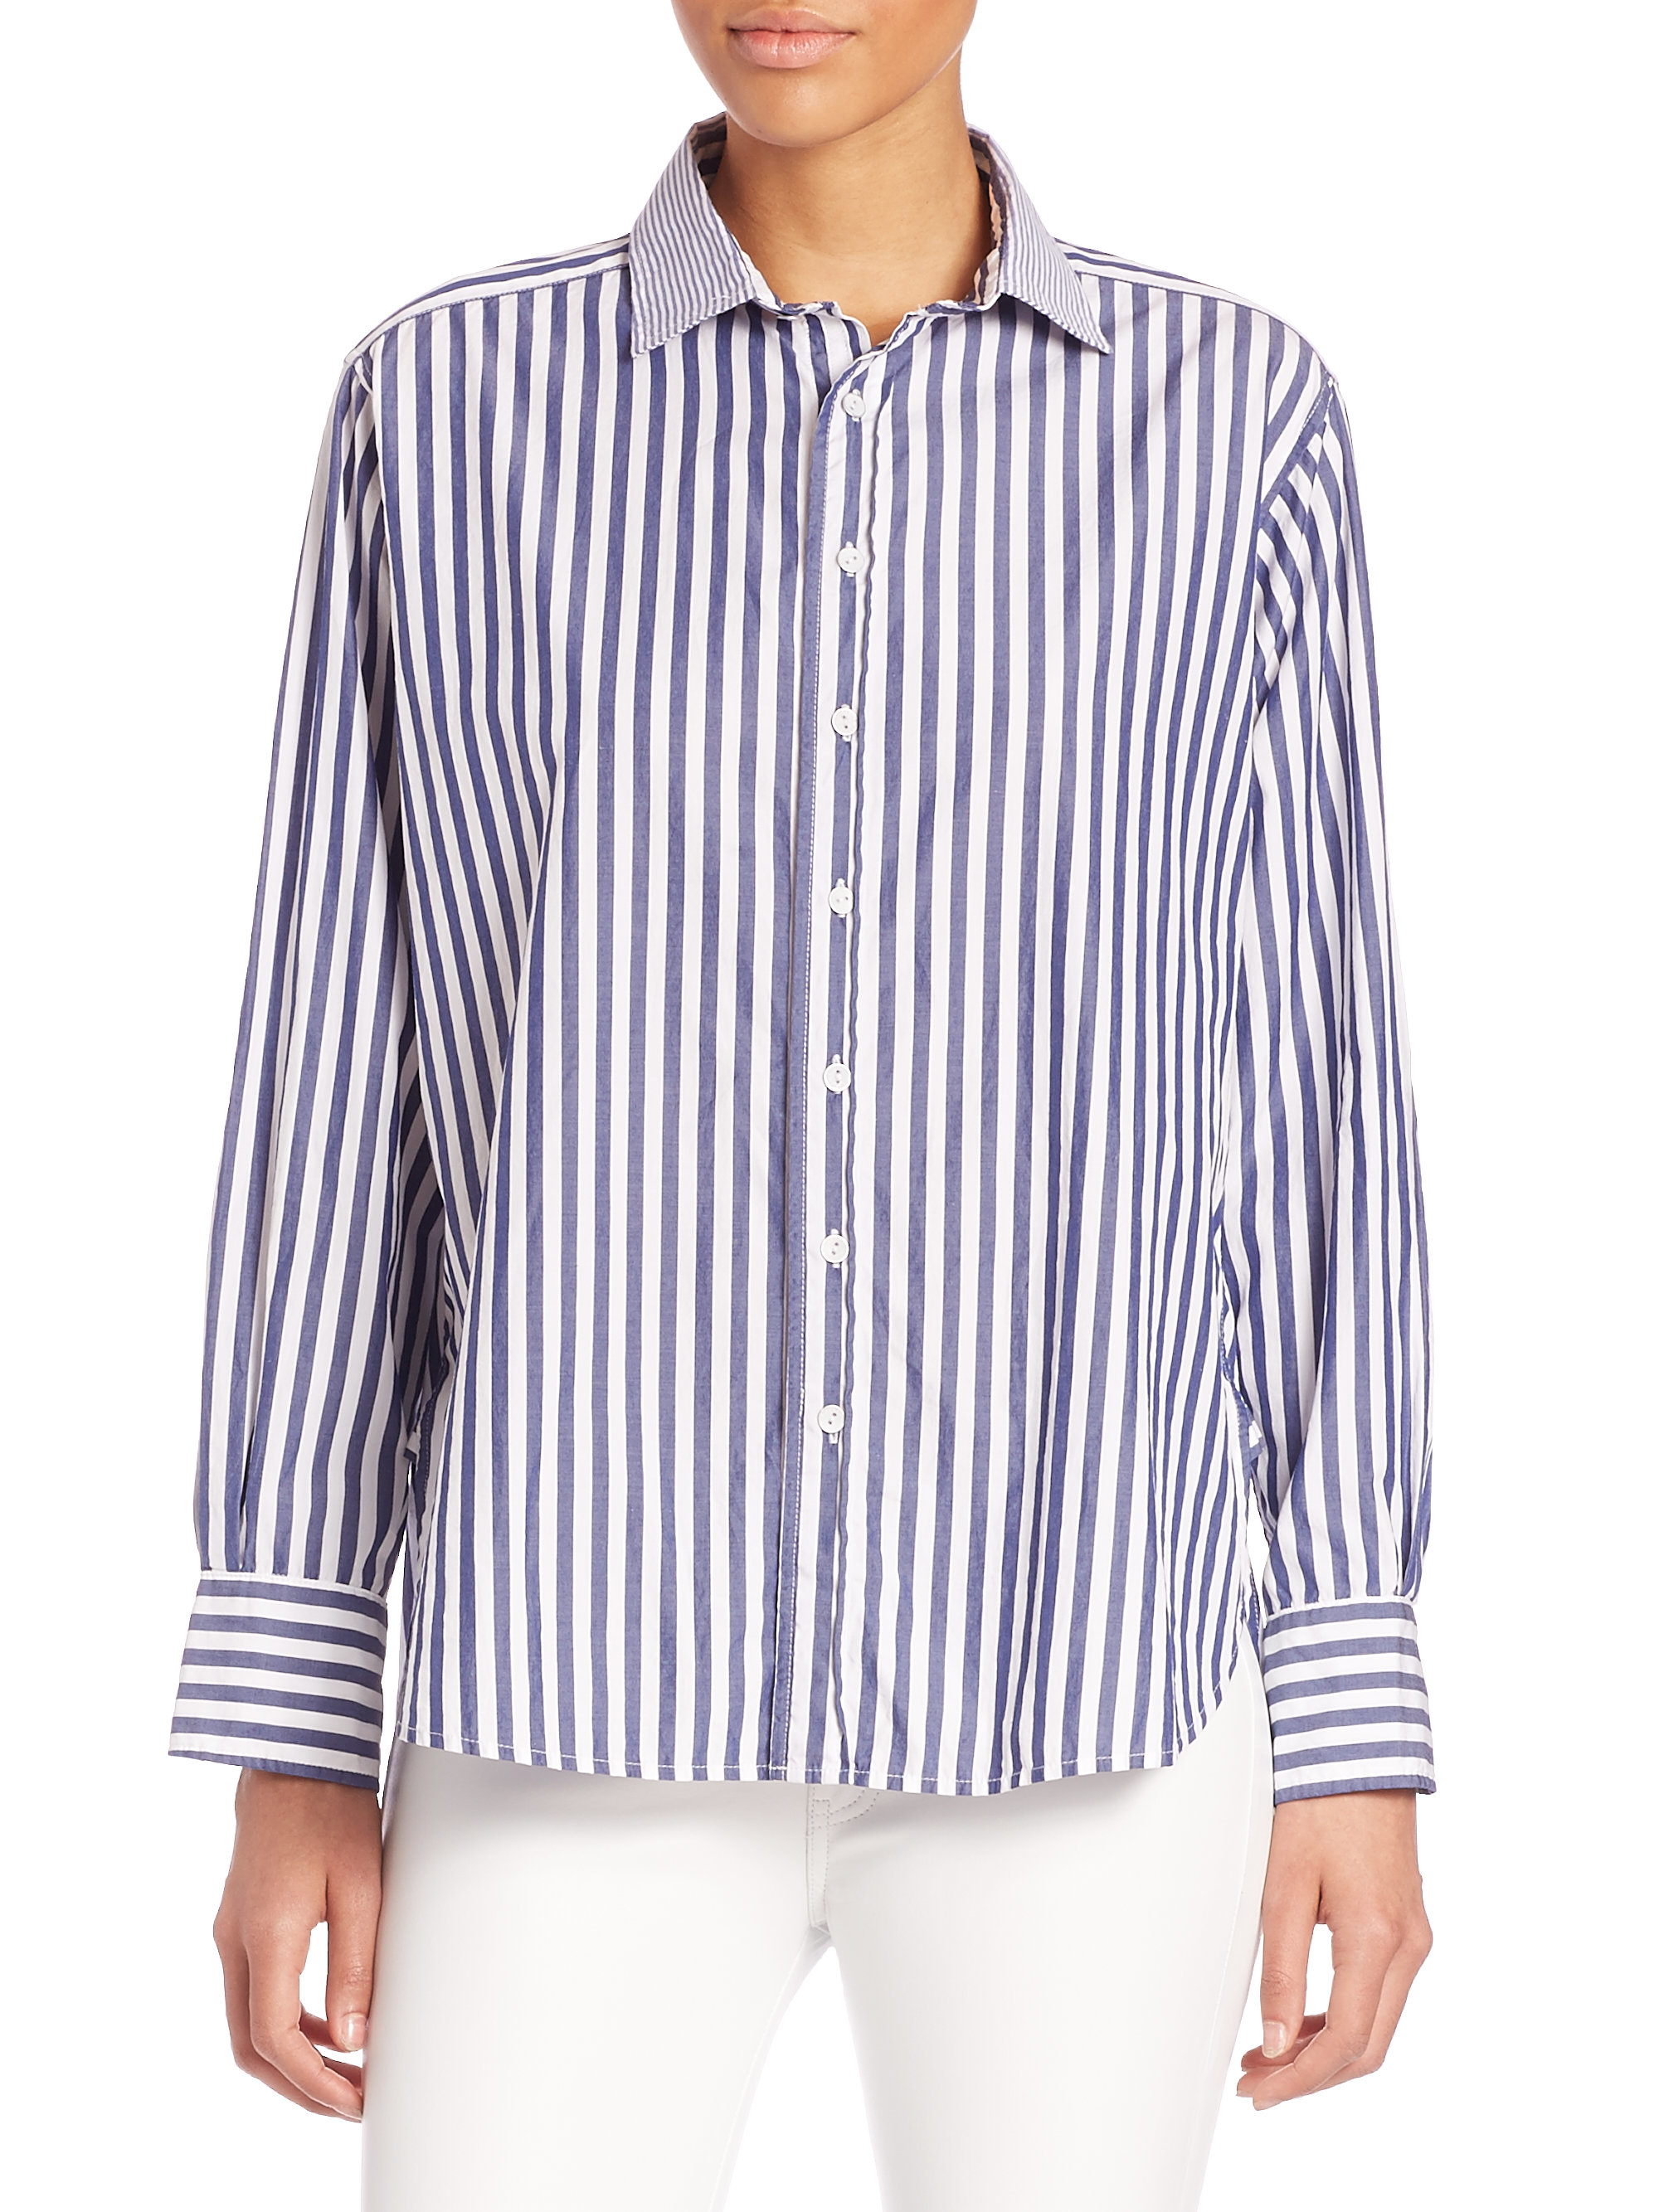 Rag & Bone Striped Cotton Boyfriend Shirt in Navy-White (Blue) - Lyst